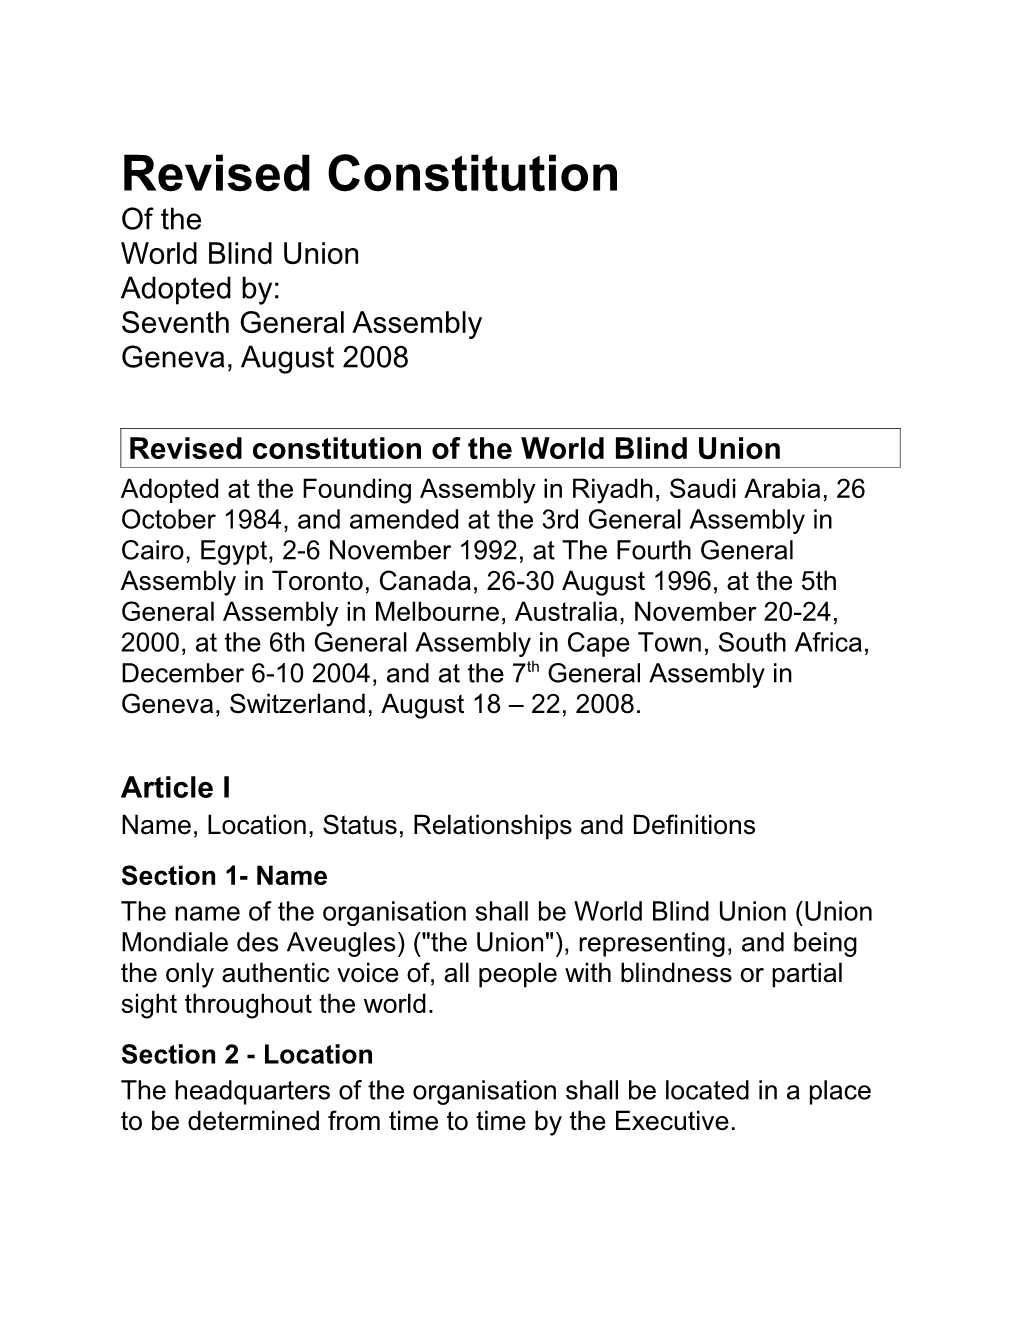 Revised WBU Constitution